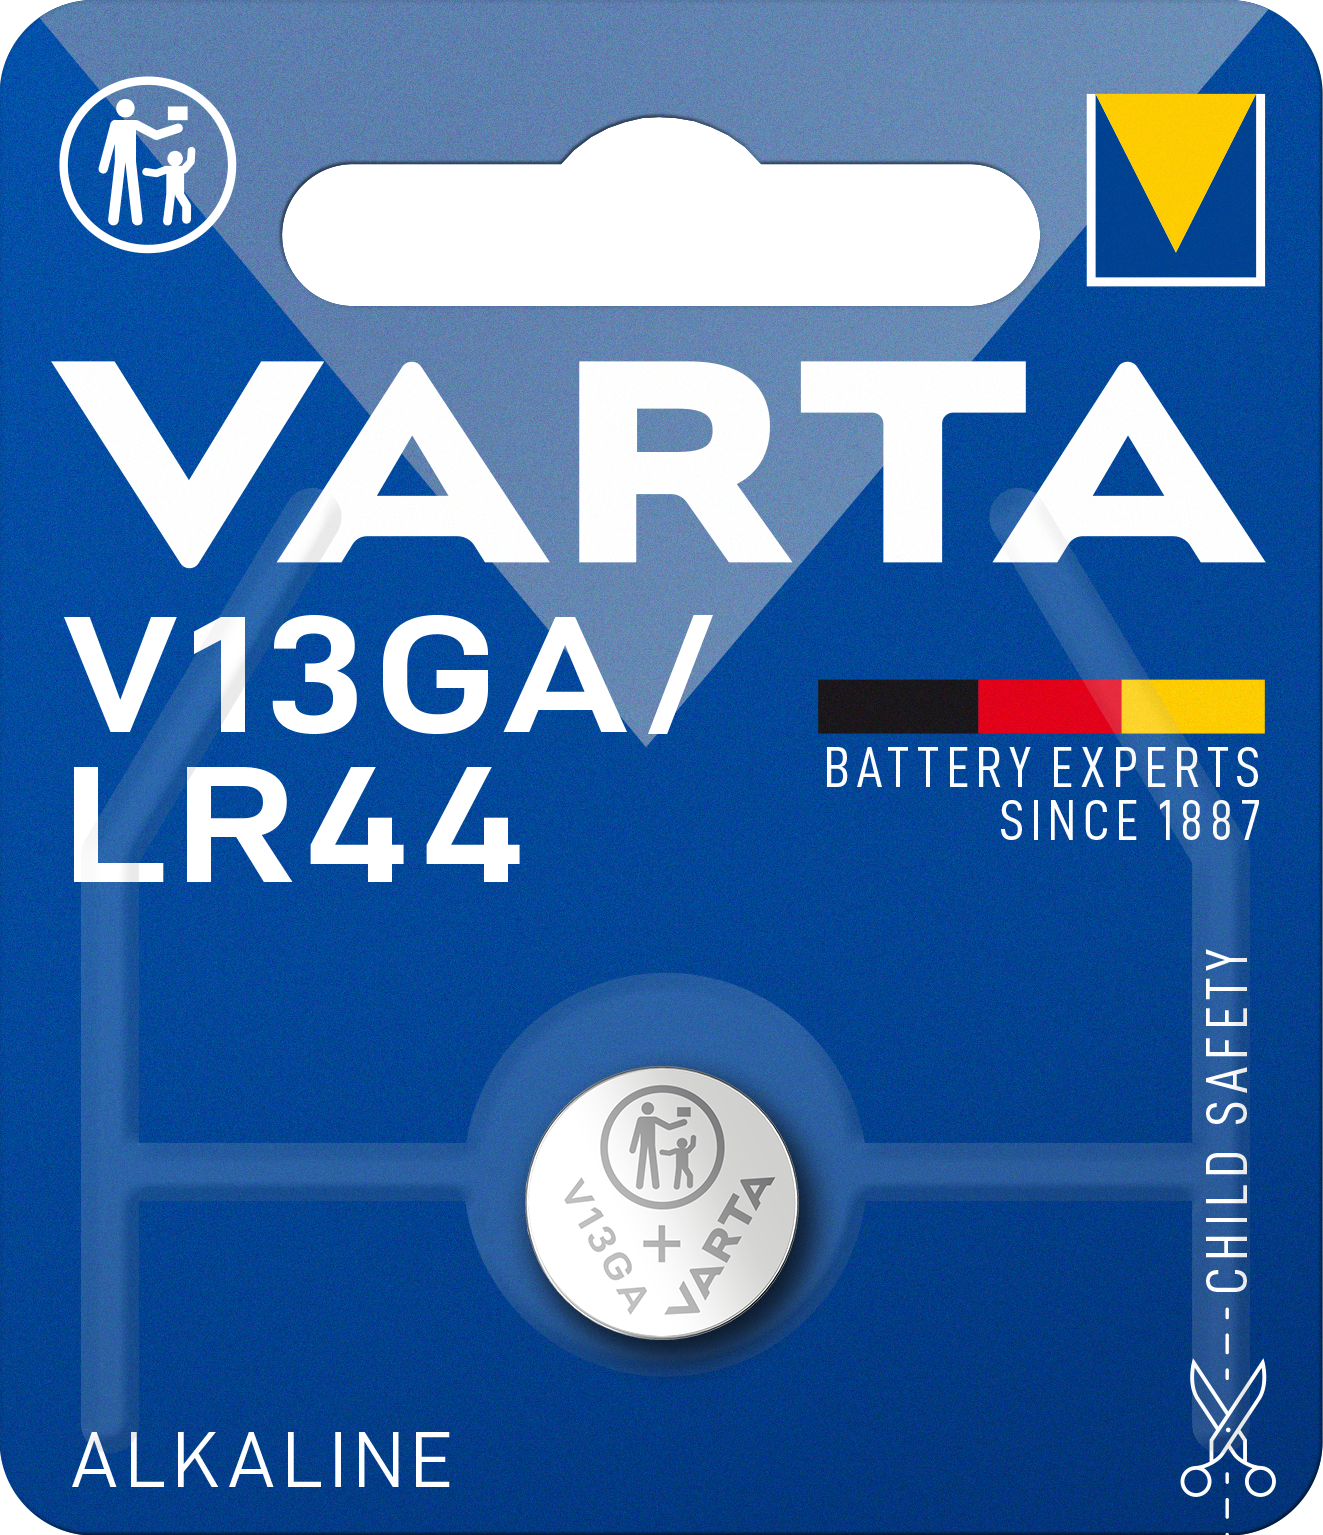 Батарейка Varta V13 GA Bli 1 Alkaline, 1 шт. (4276101401) - фото 1